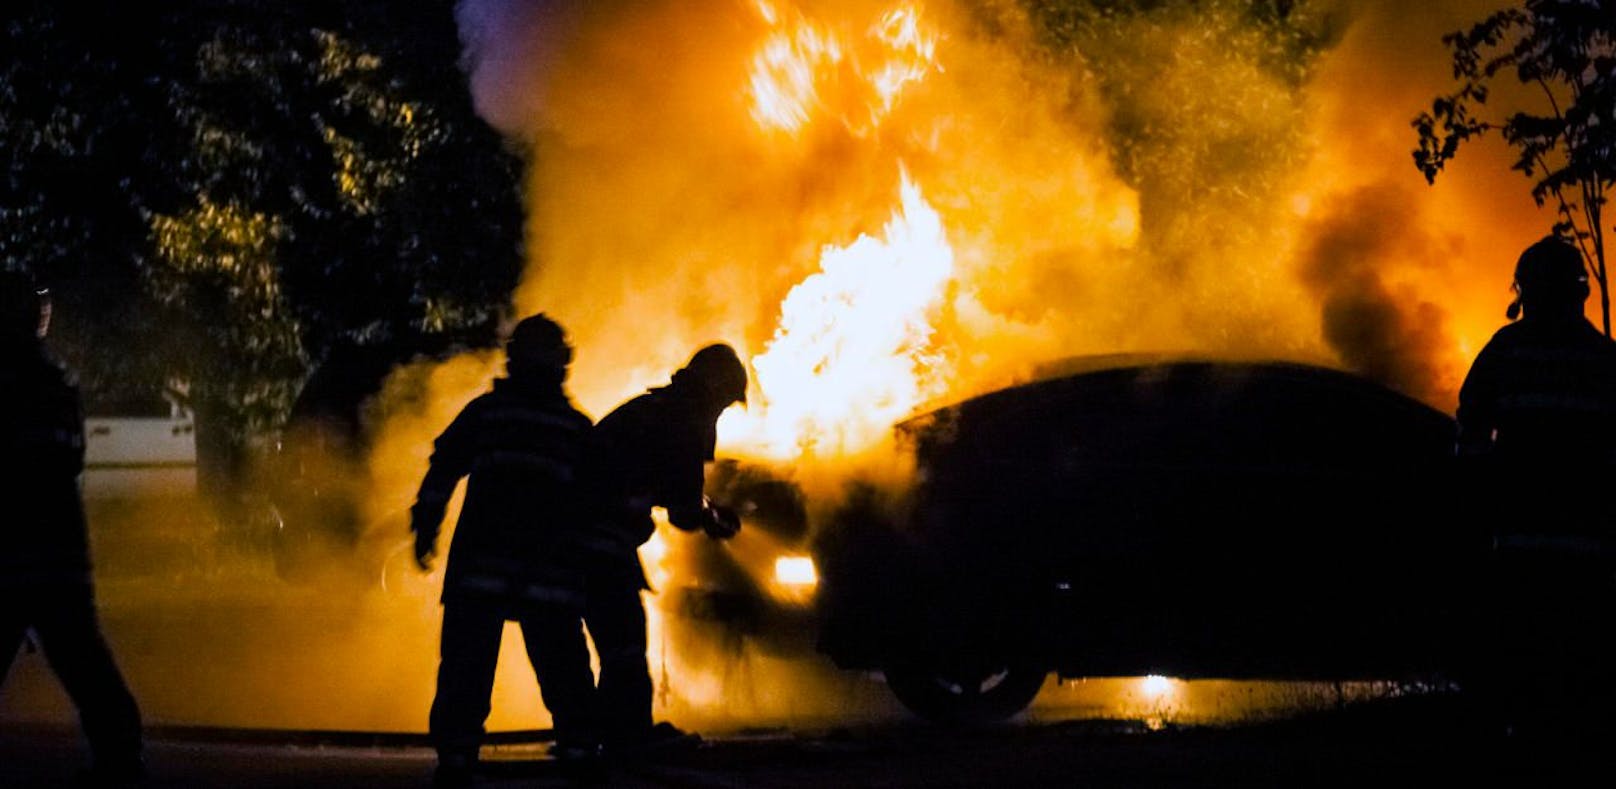 (Symbolbild) In München ist ein BMW i8 in Flammen aufgegangen. Die Polizei geht aktuell von Brandstiftung aus.